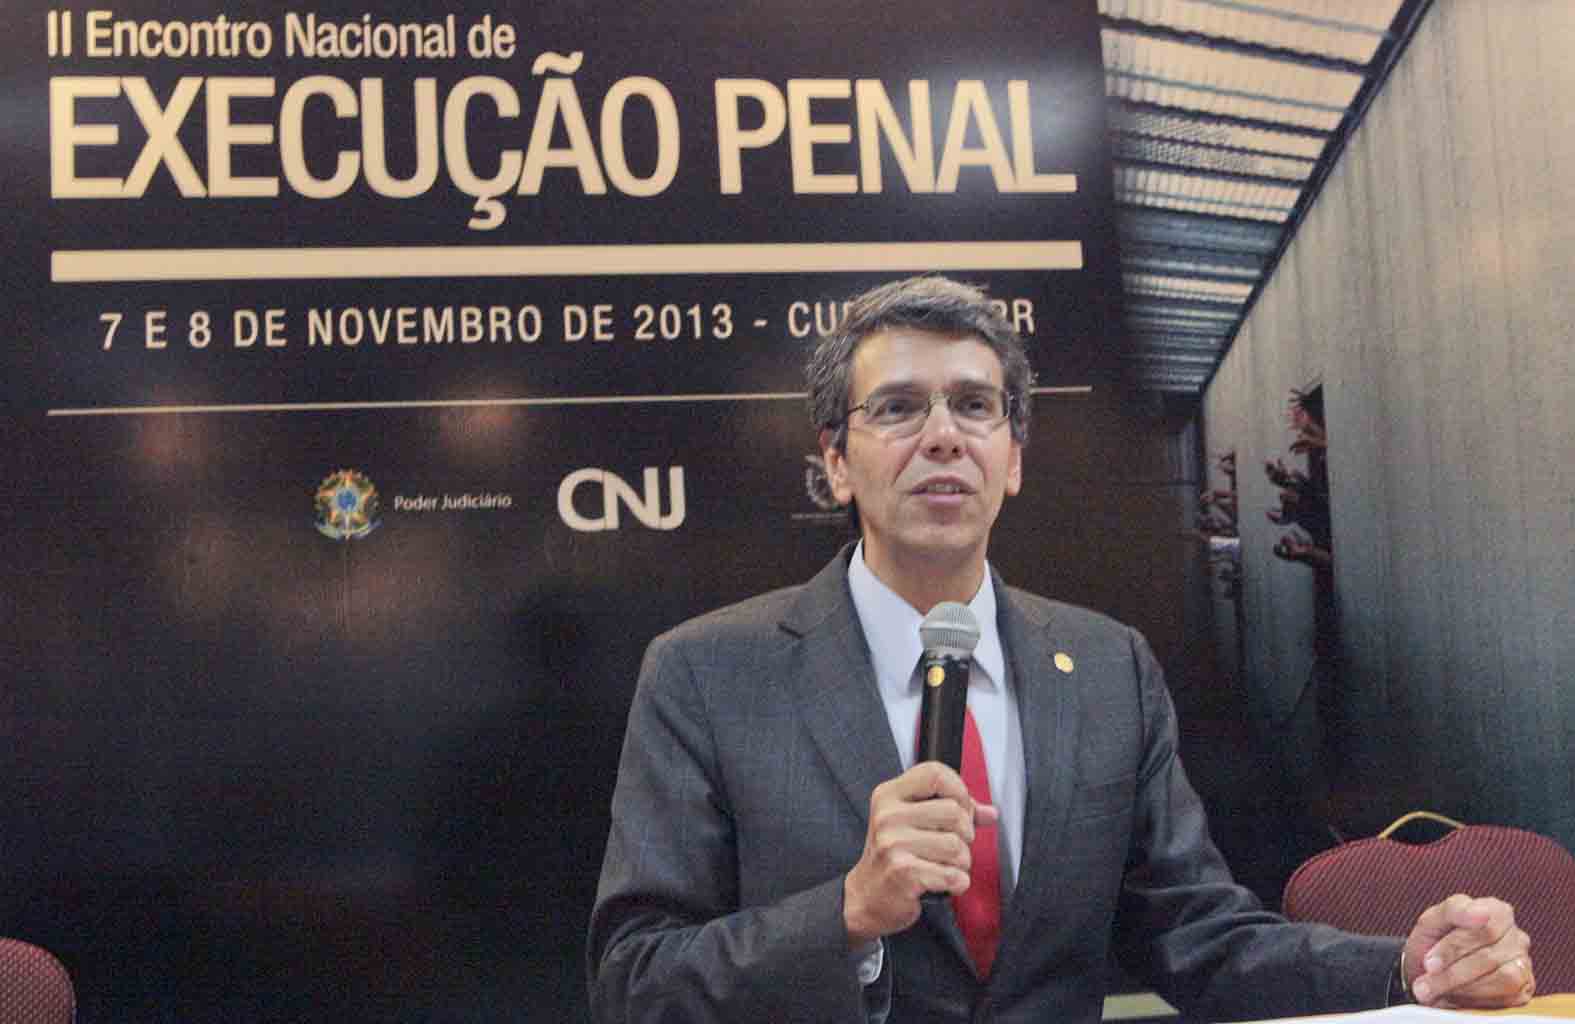 II Encontro Nacional de Execução Penal é aberto em Curitiba